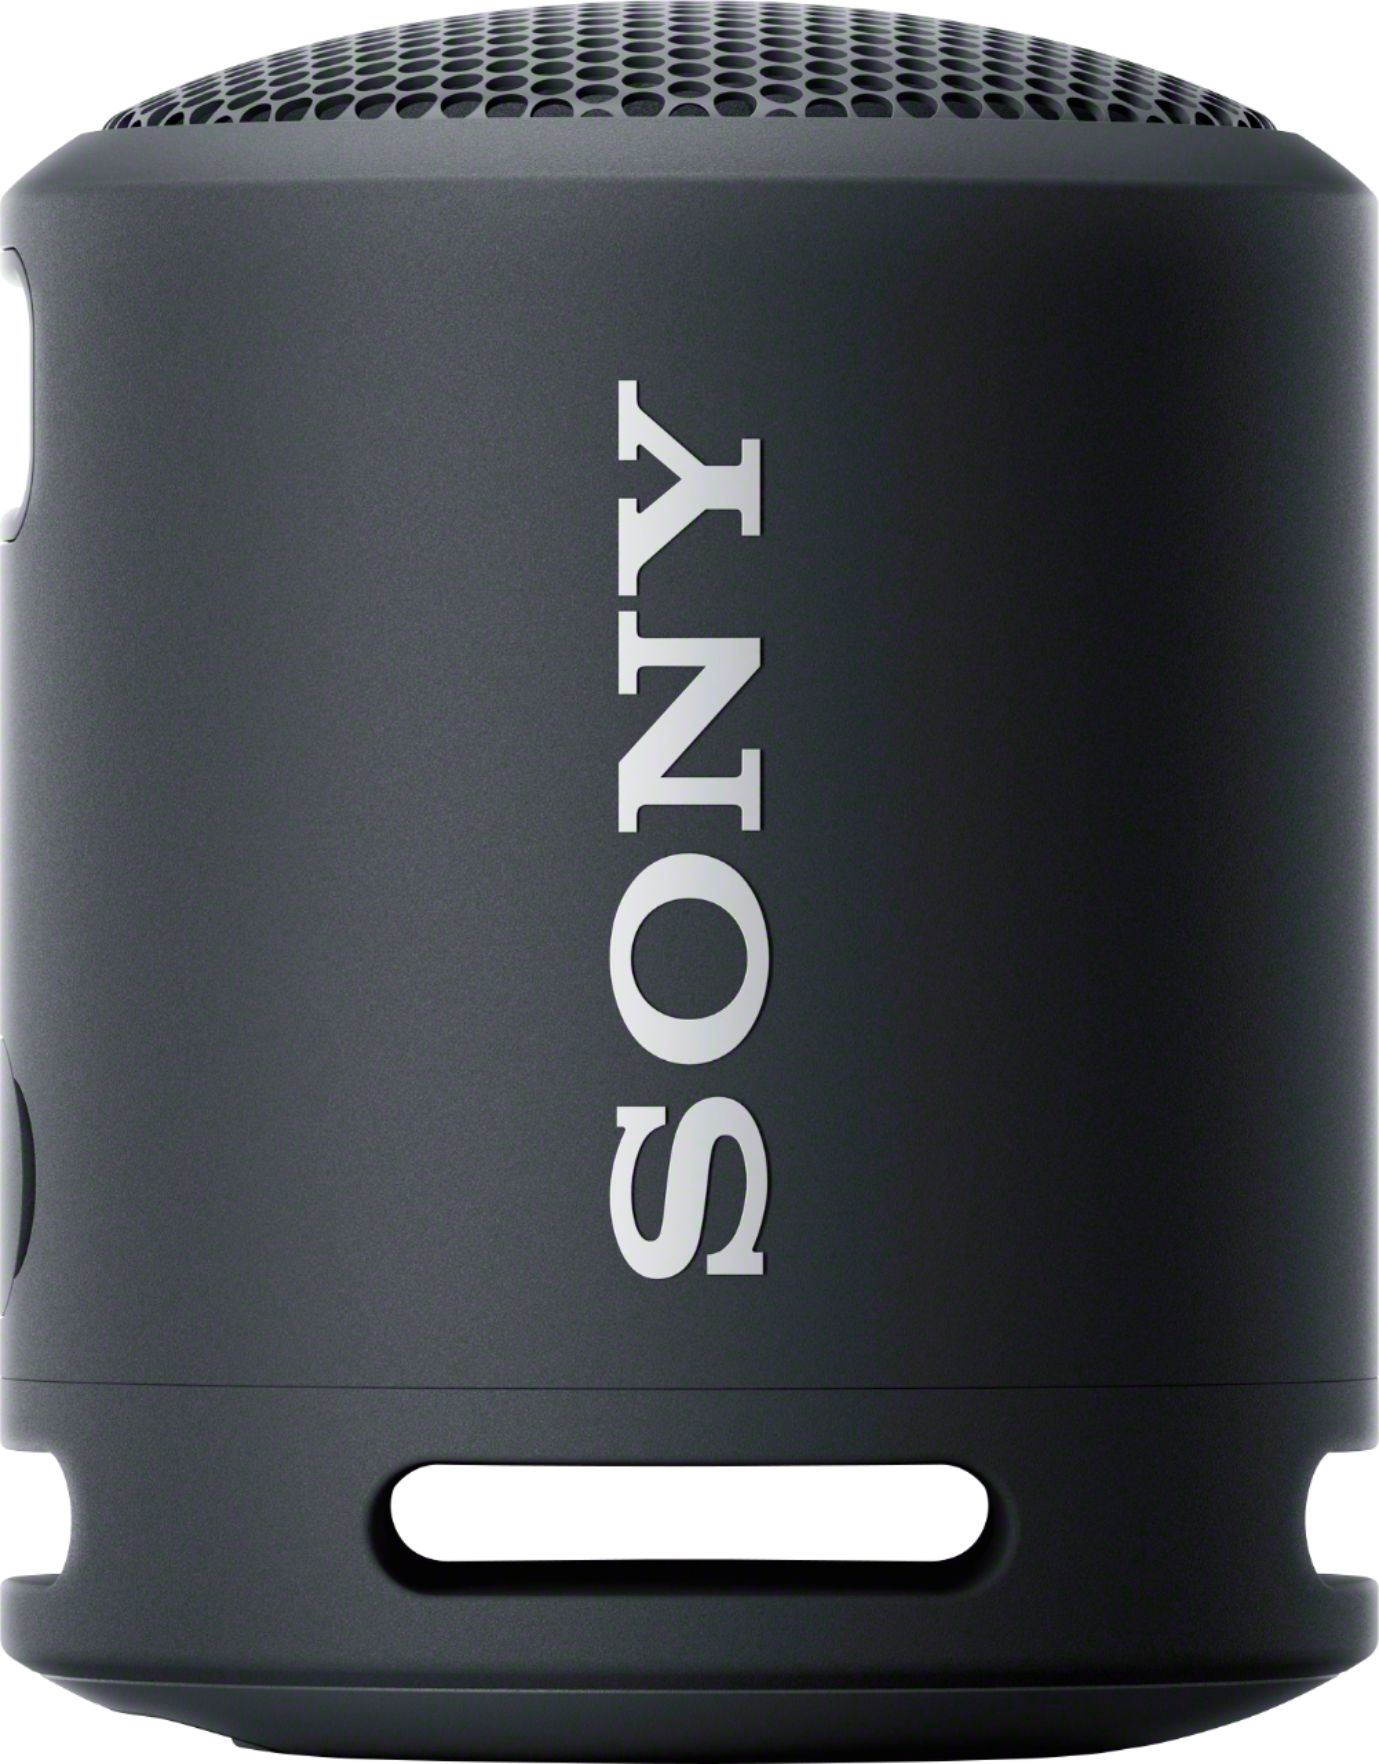 Sony SRS-XB13 Extra BASS Altavoz compacto portátil inalámbrico IP67  impermeable Bluetooth, negro (SRSXB13/B)